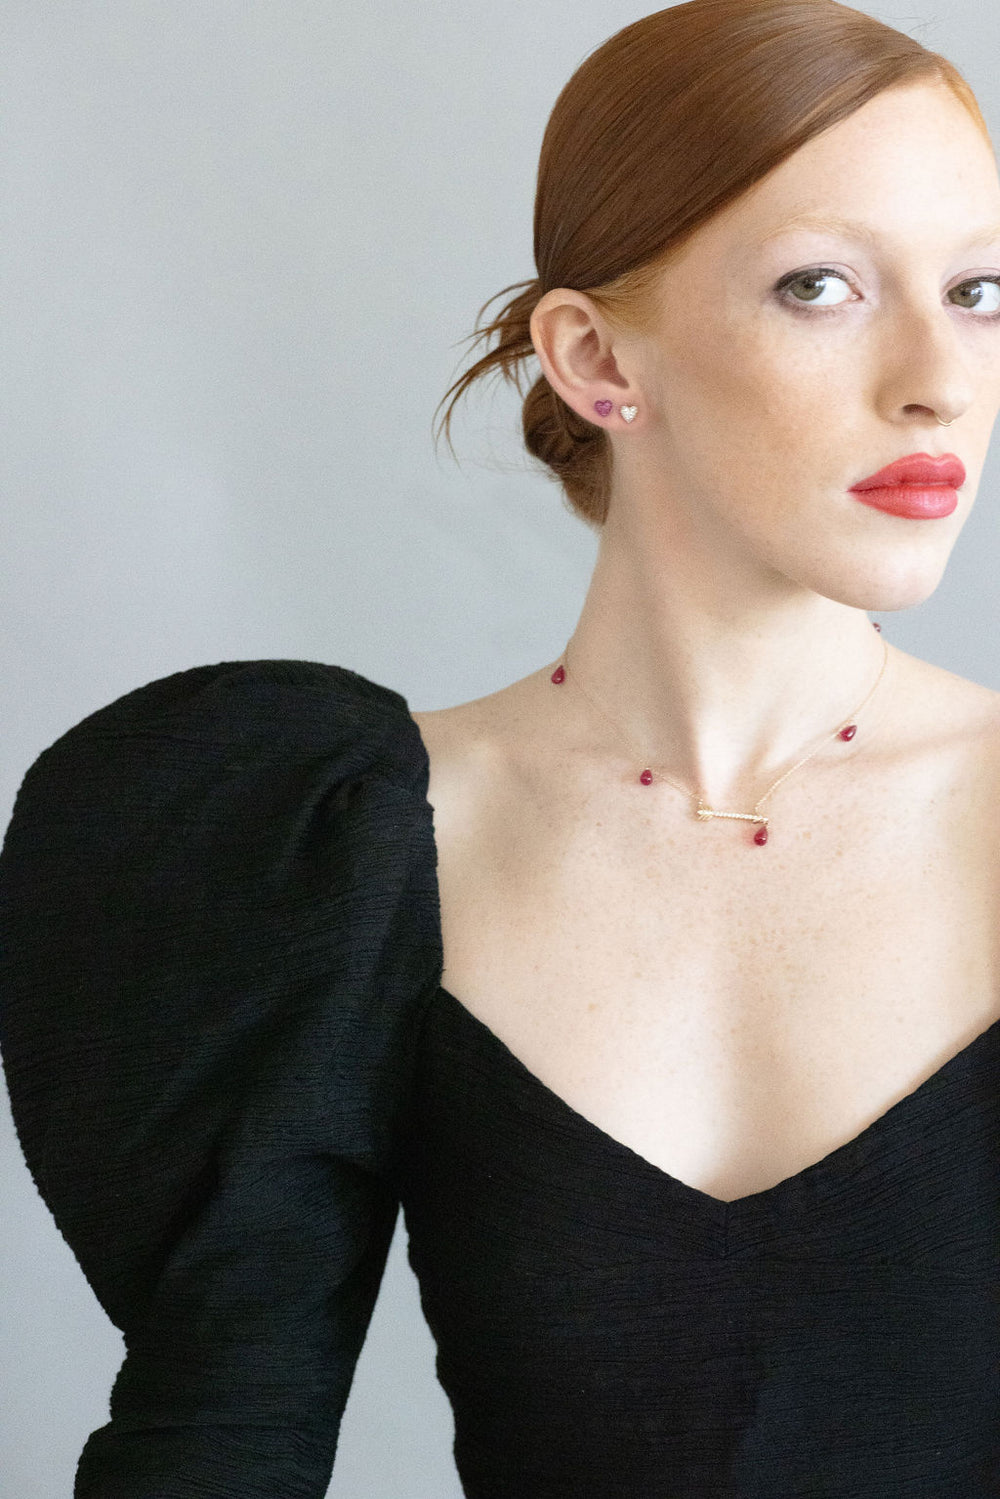 model wearing artemis necklace and sweet p earrings wearing a black formal dress